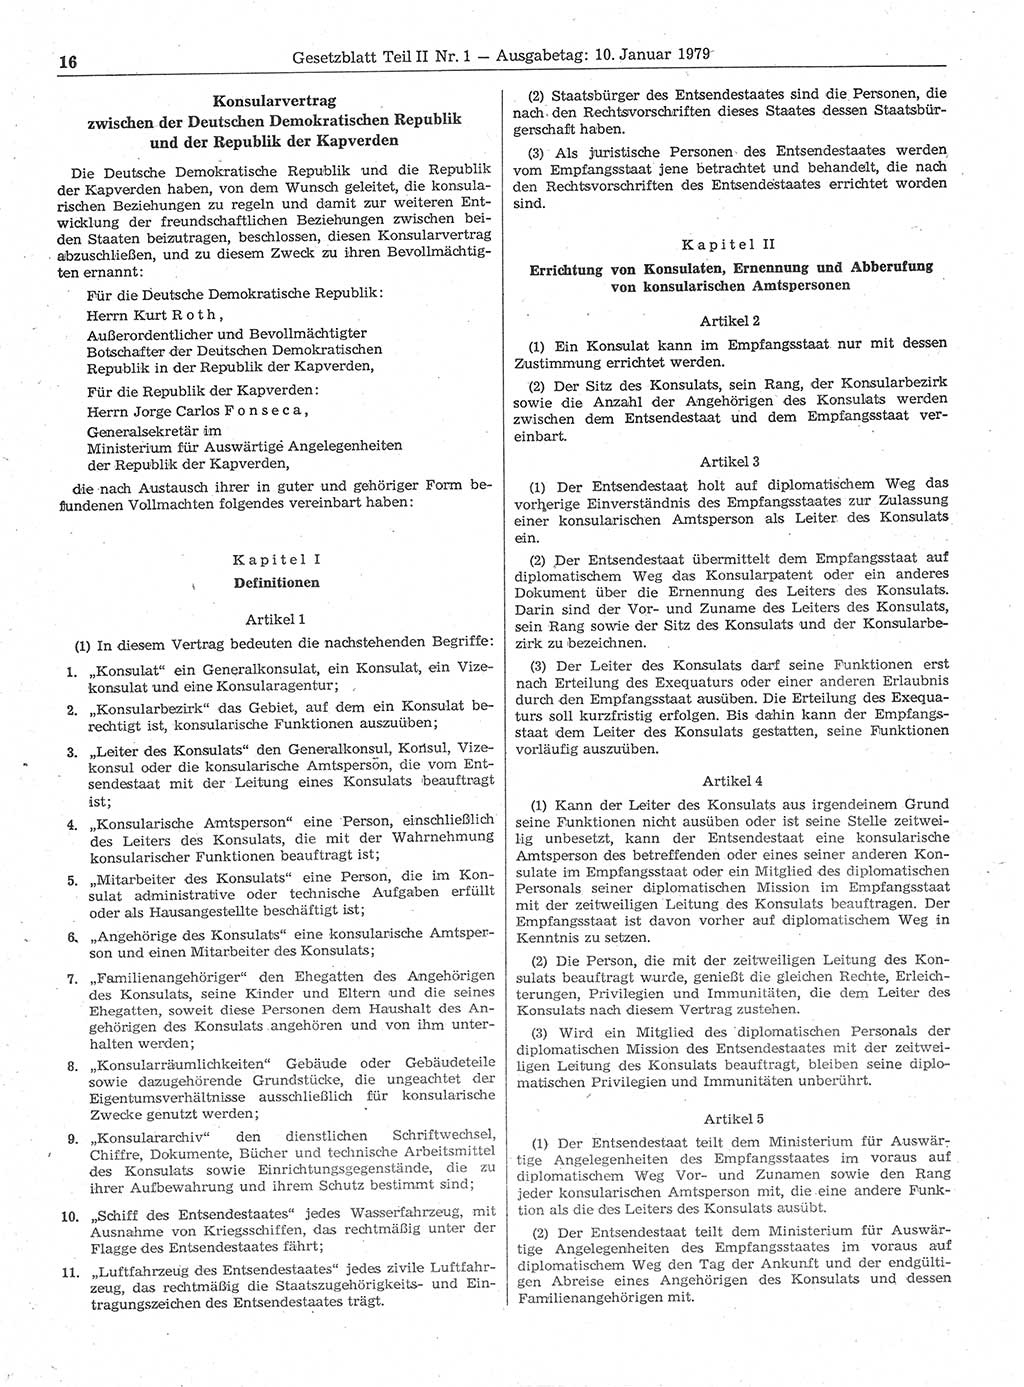 Gesetzblatt (GBl.) der Deutschen Demokratischen Republik (DDR) Teil ⅠⅠ 1979, Seite 16 (GBl. DDR ⅠⅠ 1979, S. 16)